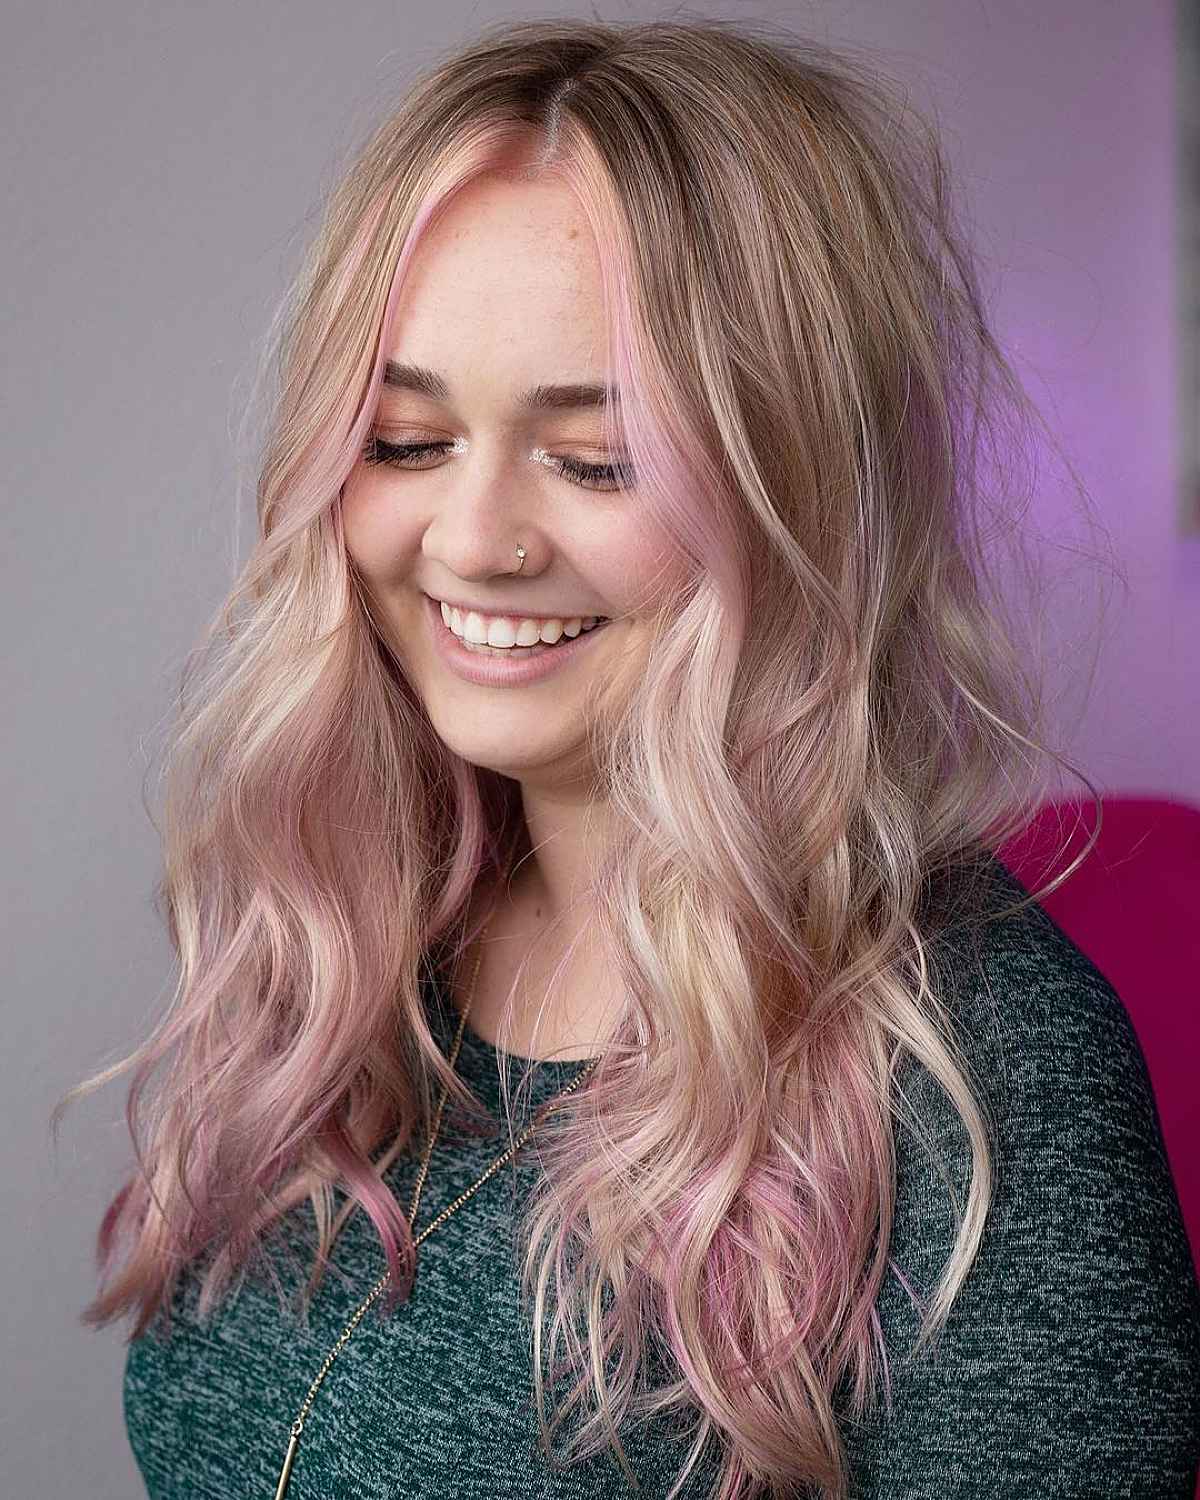 Девушка с полным лицом и легкими локонами на светлых волосах с розовым оттенком